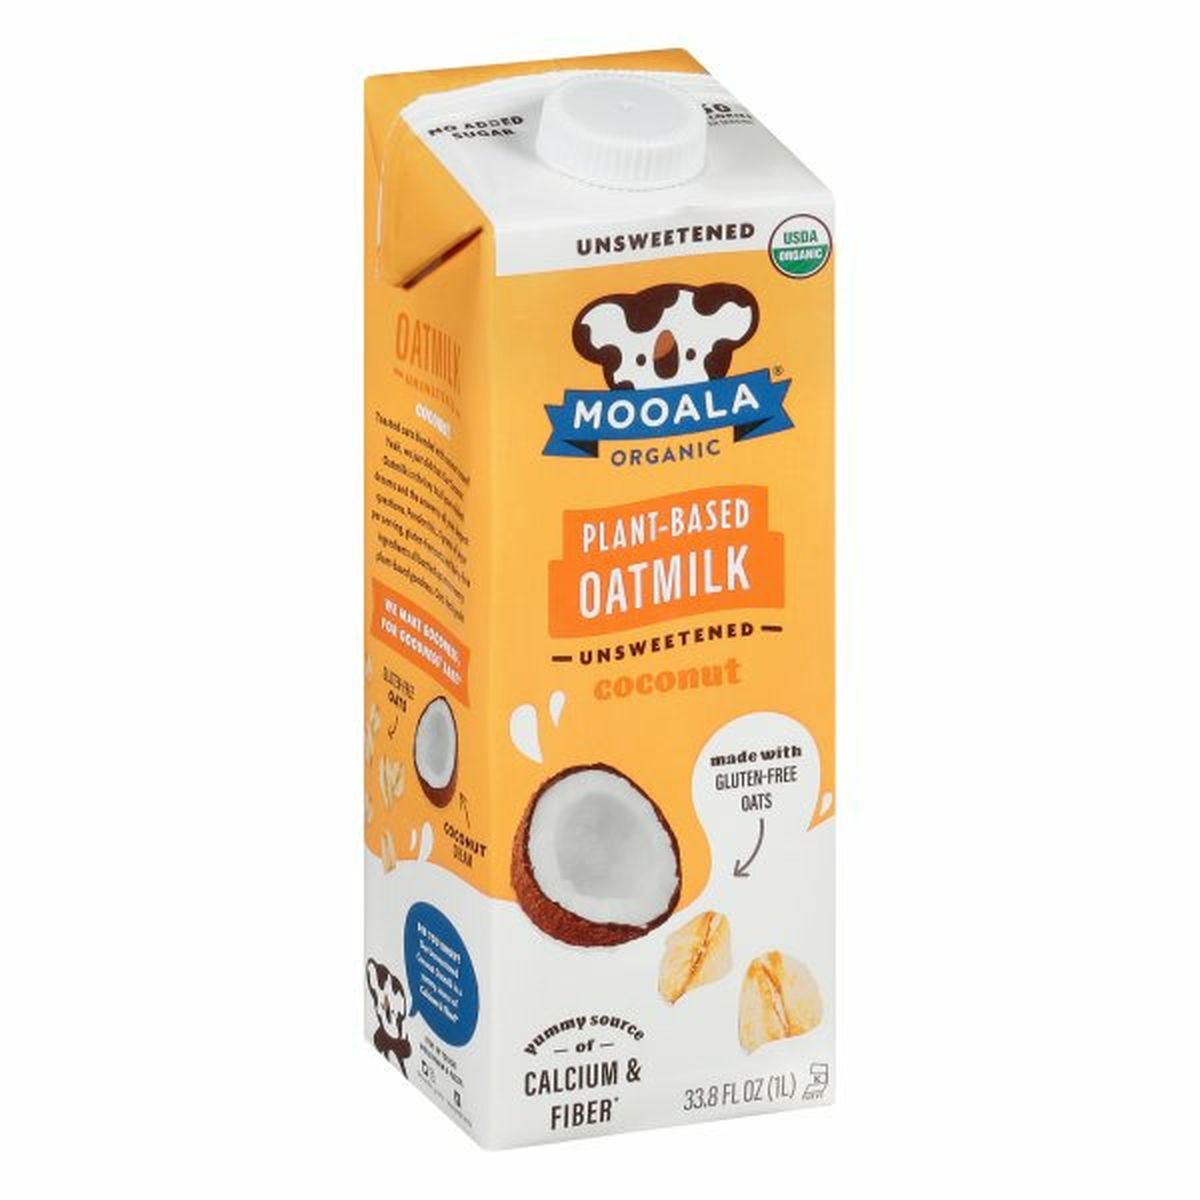 Calories in Mooala Organic Oatmilk, Coconut, Unsweetened